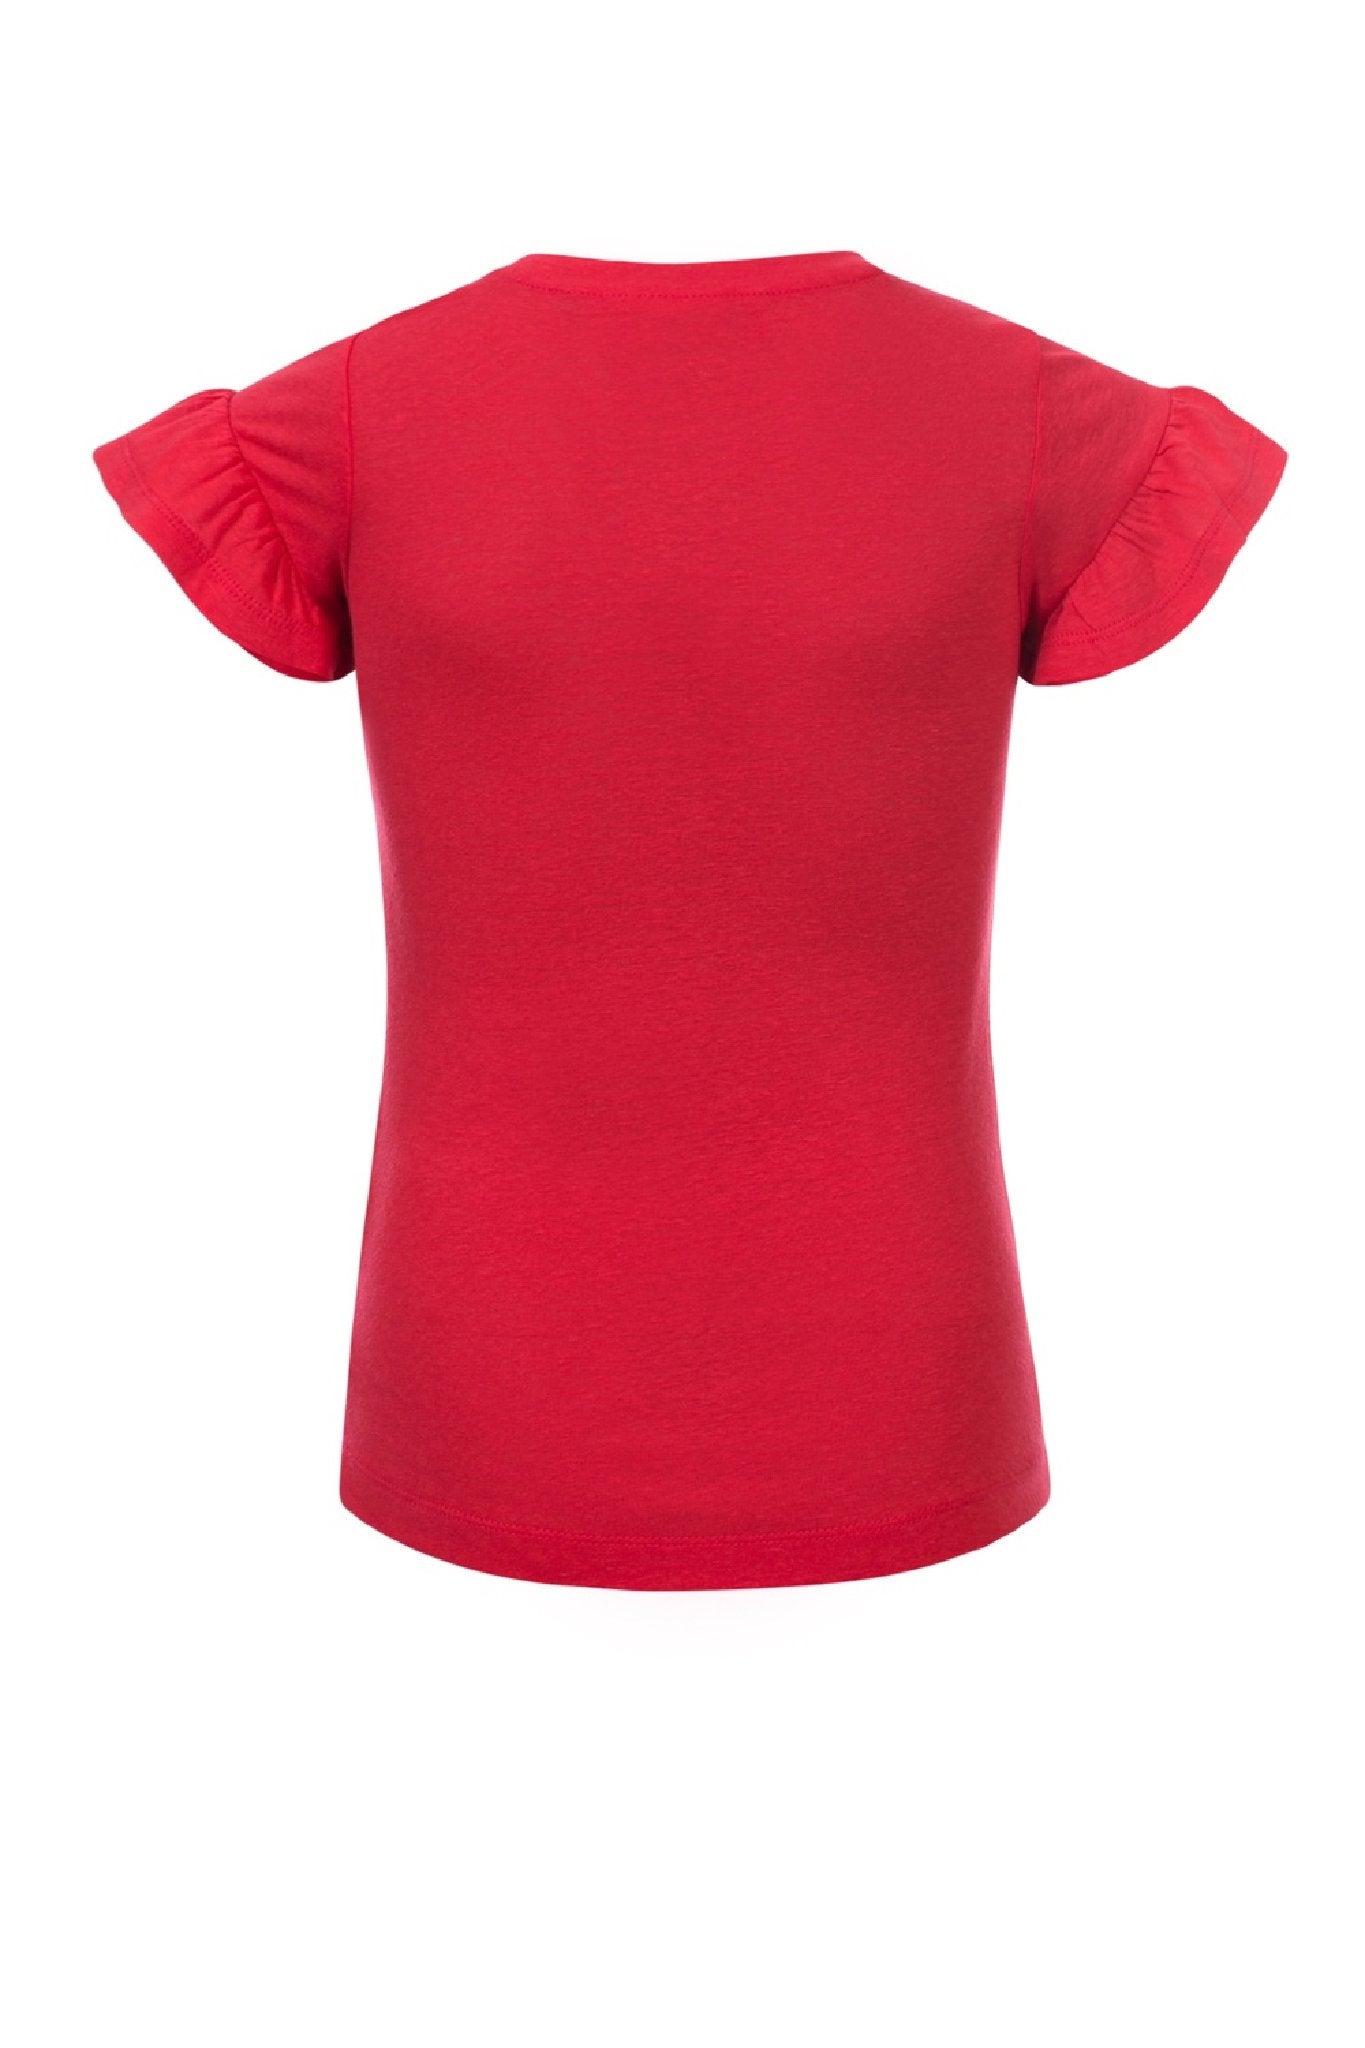 Meisjes Girls T-shirt s/s van Looxs in de kleur Rose in maat 164.